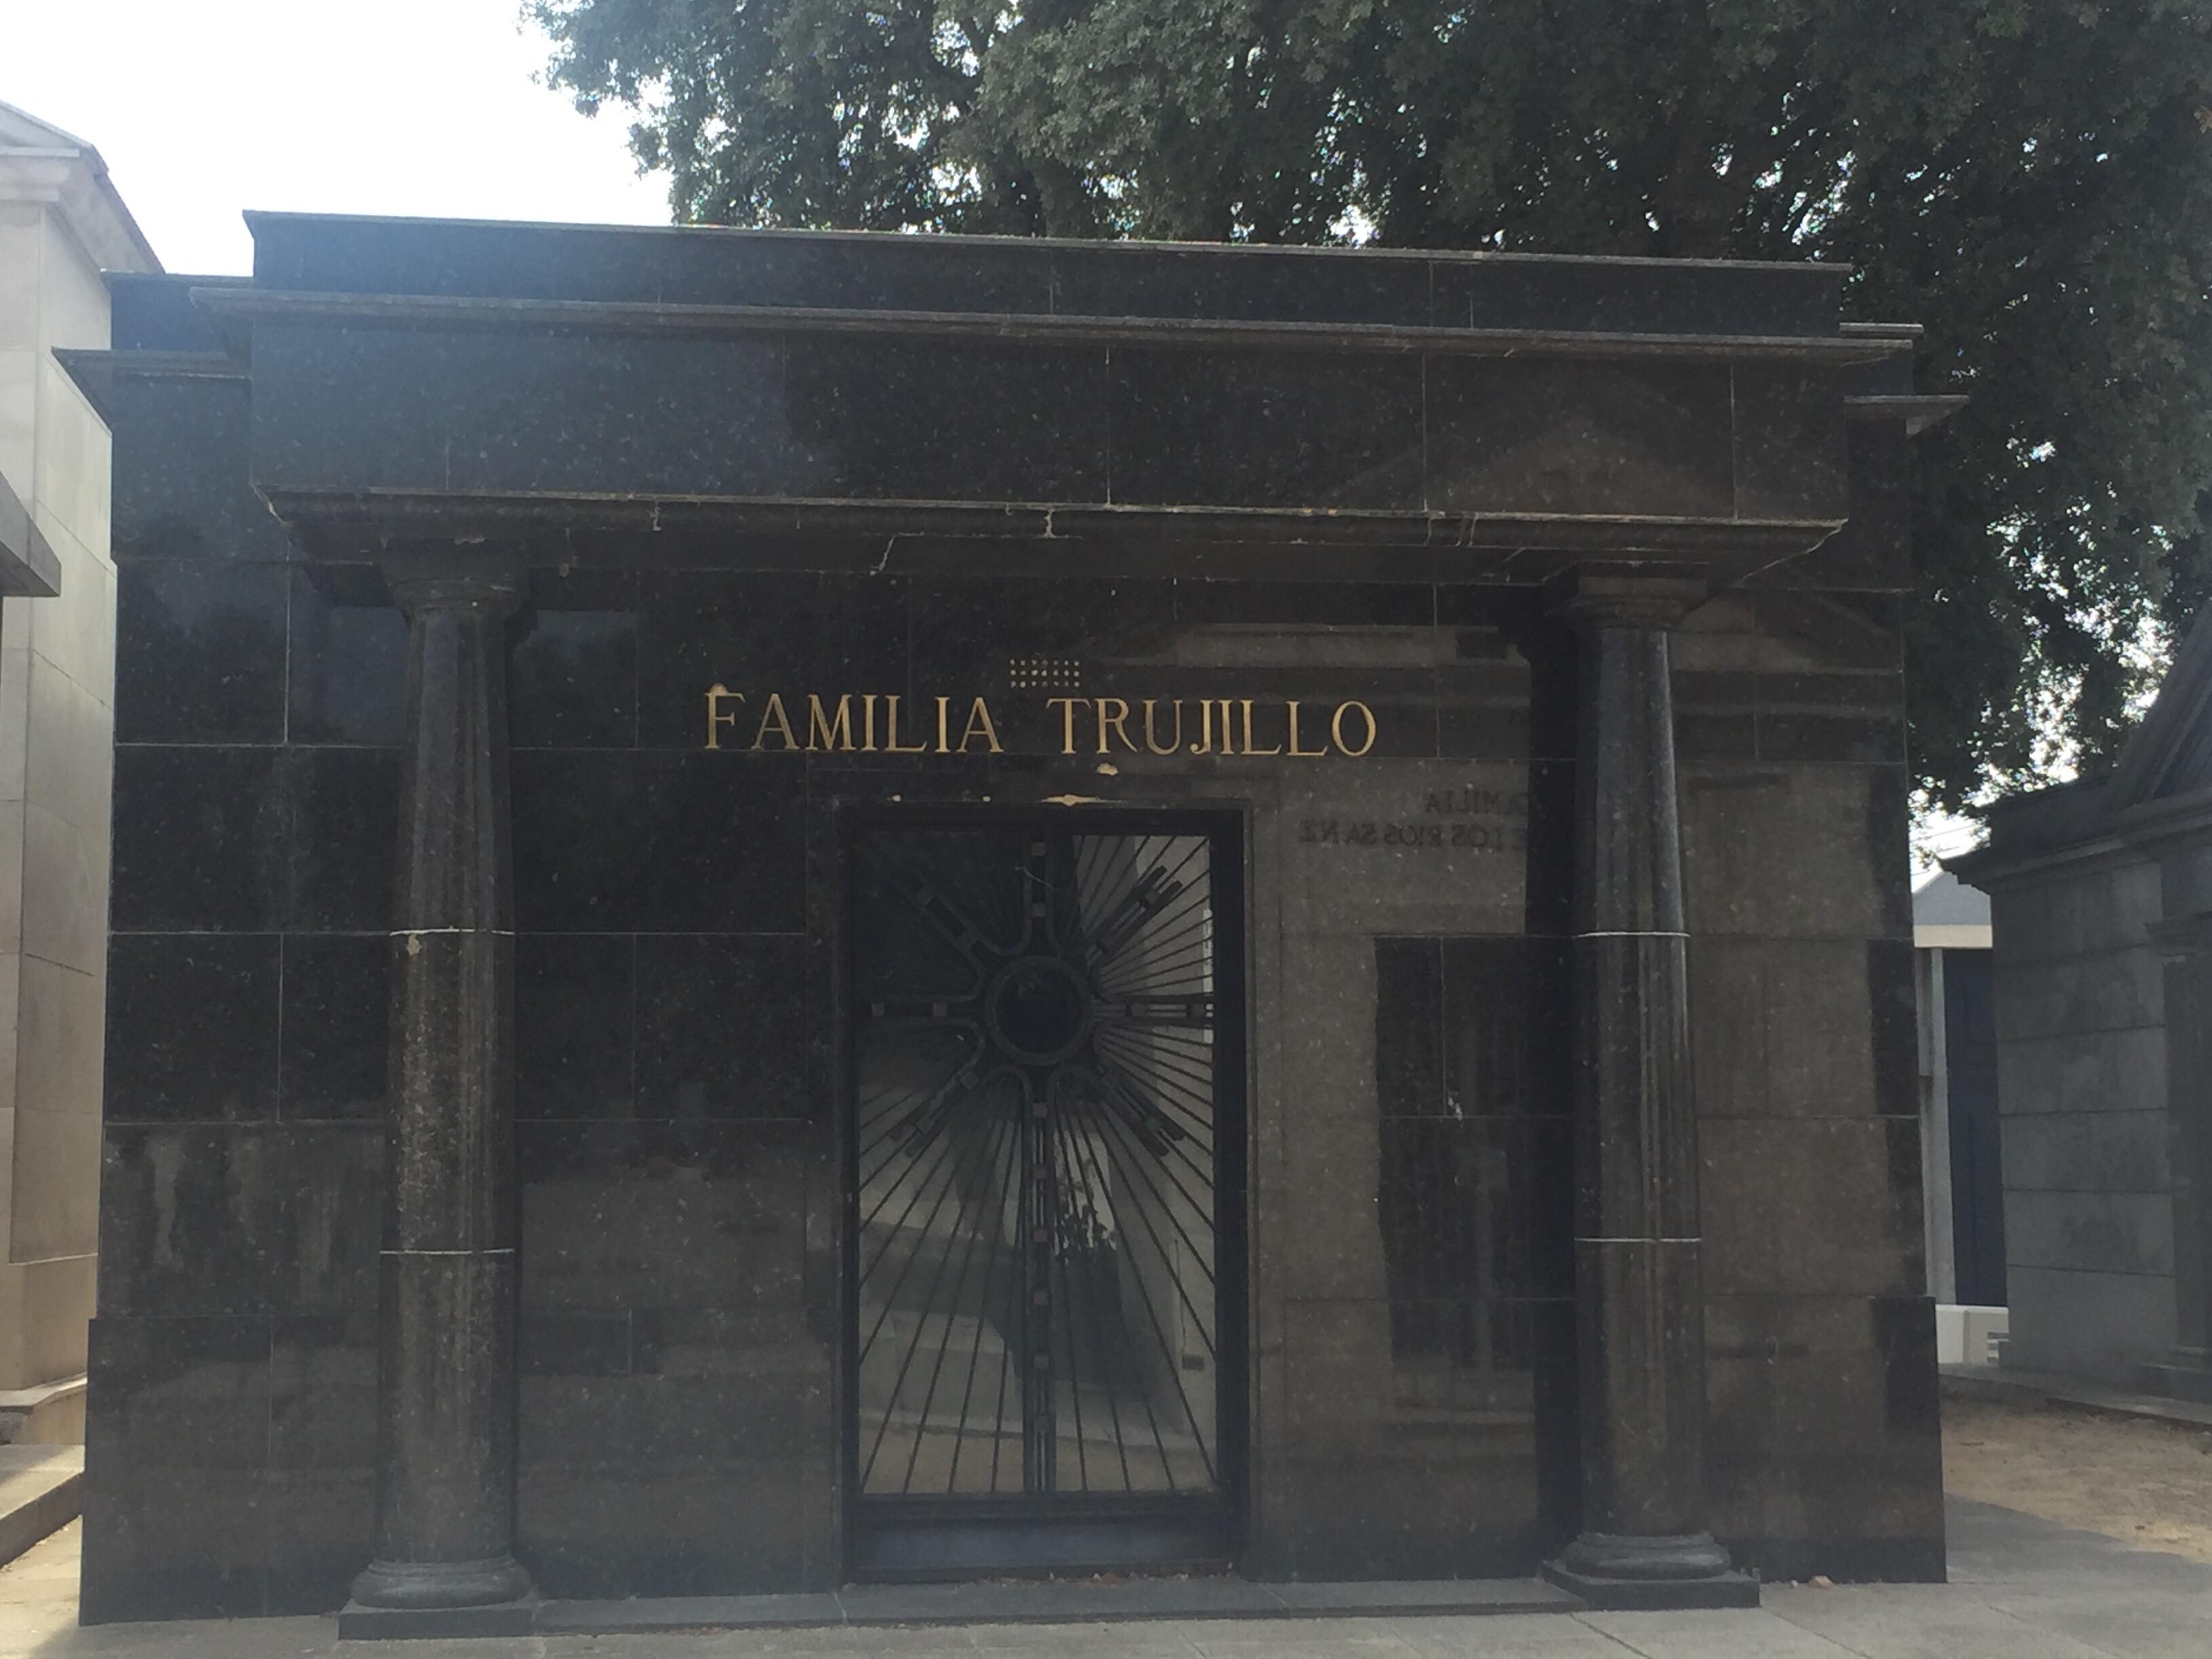 El Panteón de la Familia Trujillo en El Pardo, Madrid